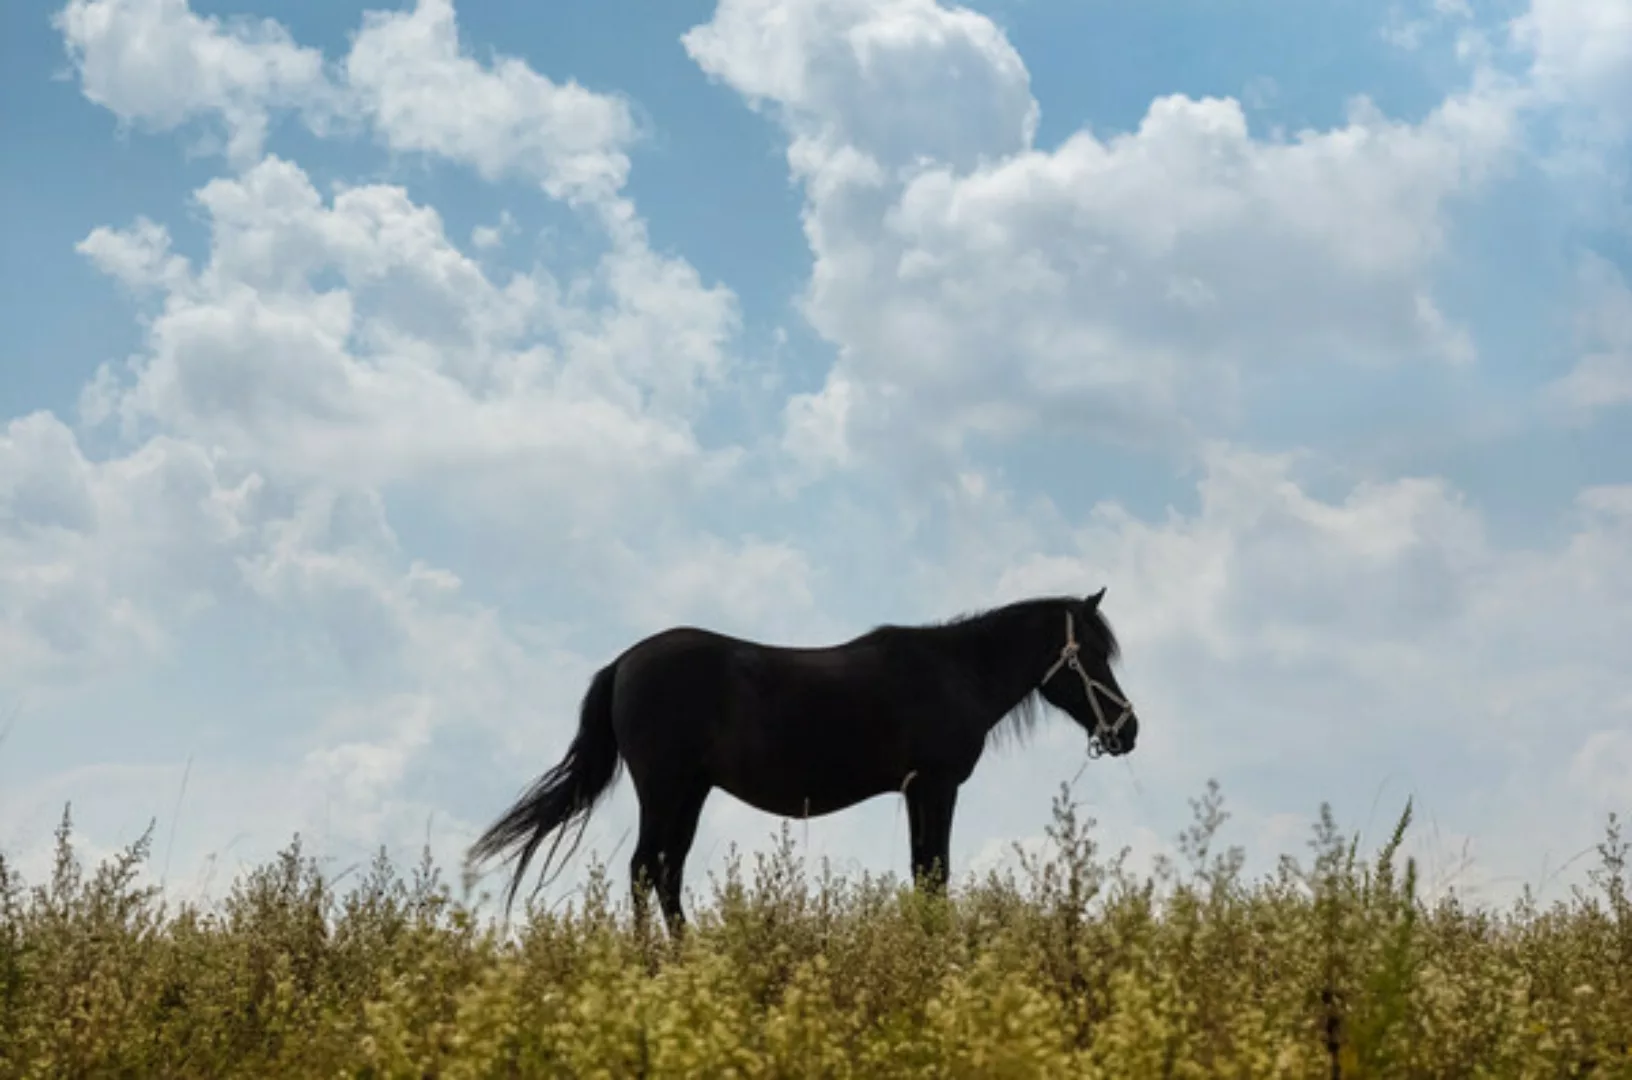 Poster / Leinwandbild - Lone Horse günstig online kaufen